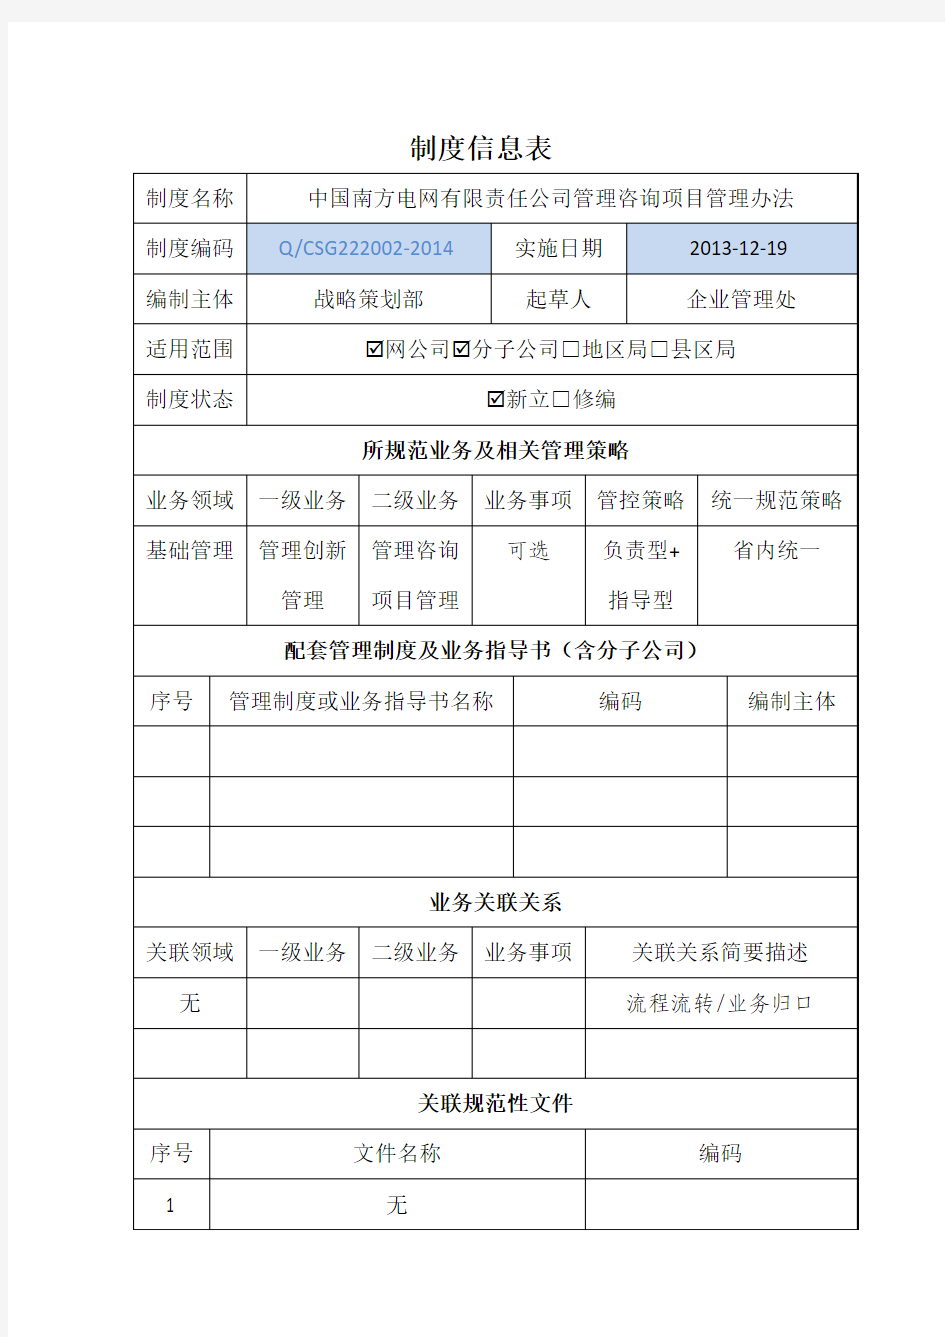 《中国南方电网有限责任公司管理咨询项目管理办法》制度信息表